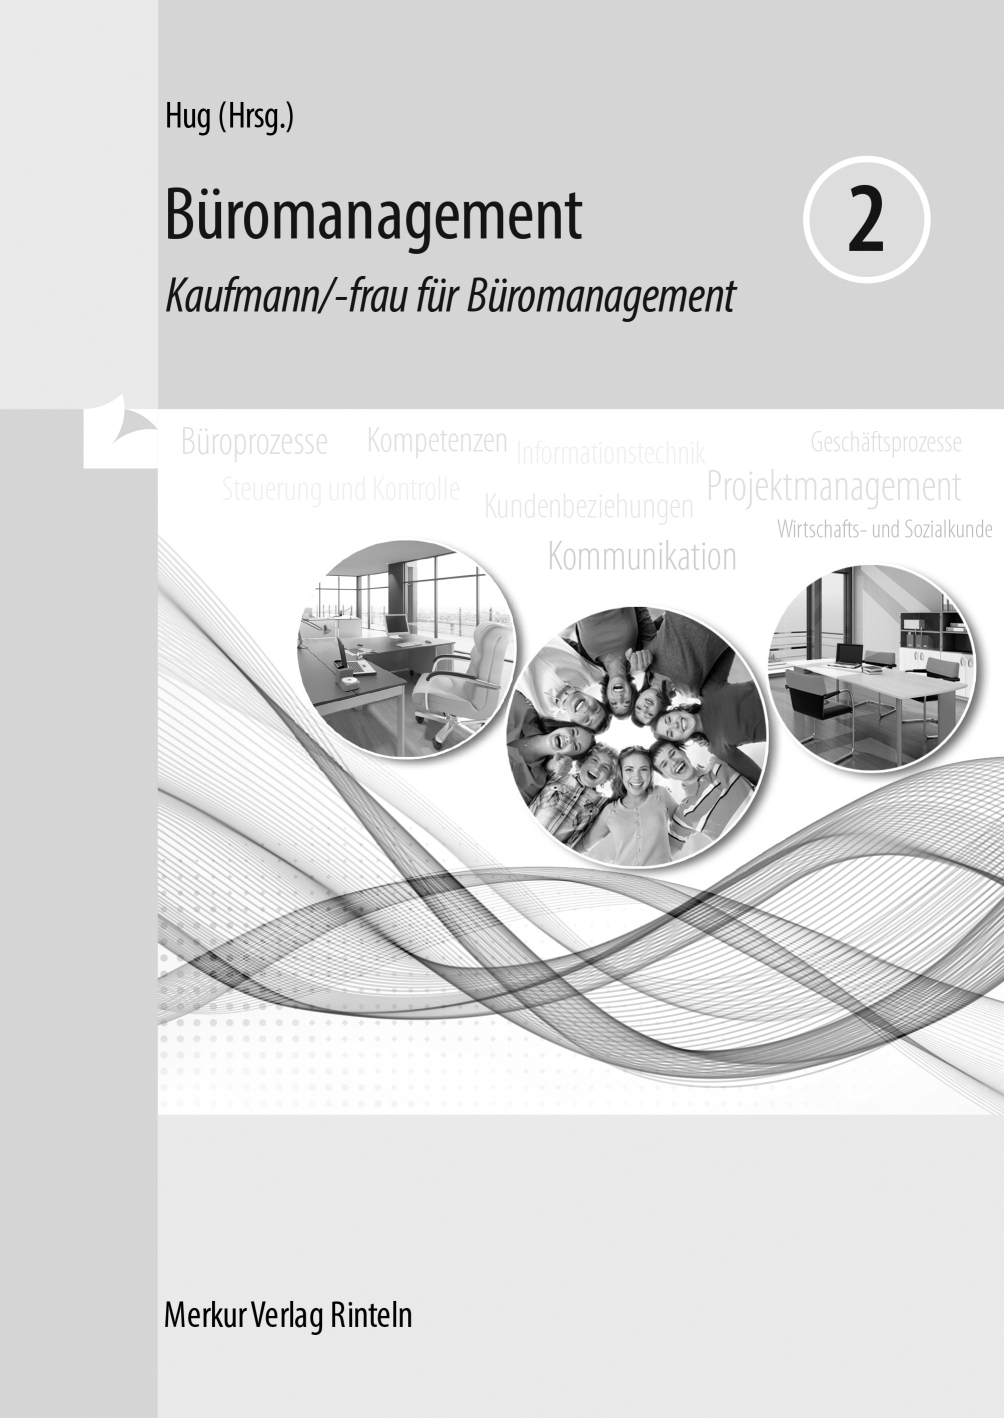 Büromanagement 2 Kaufmann/-frau für Büromanagement -2. Ausbildungsjahr (Lernfelder 5 bis 8) - Lösungen